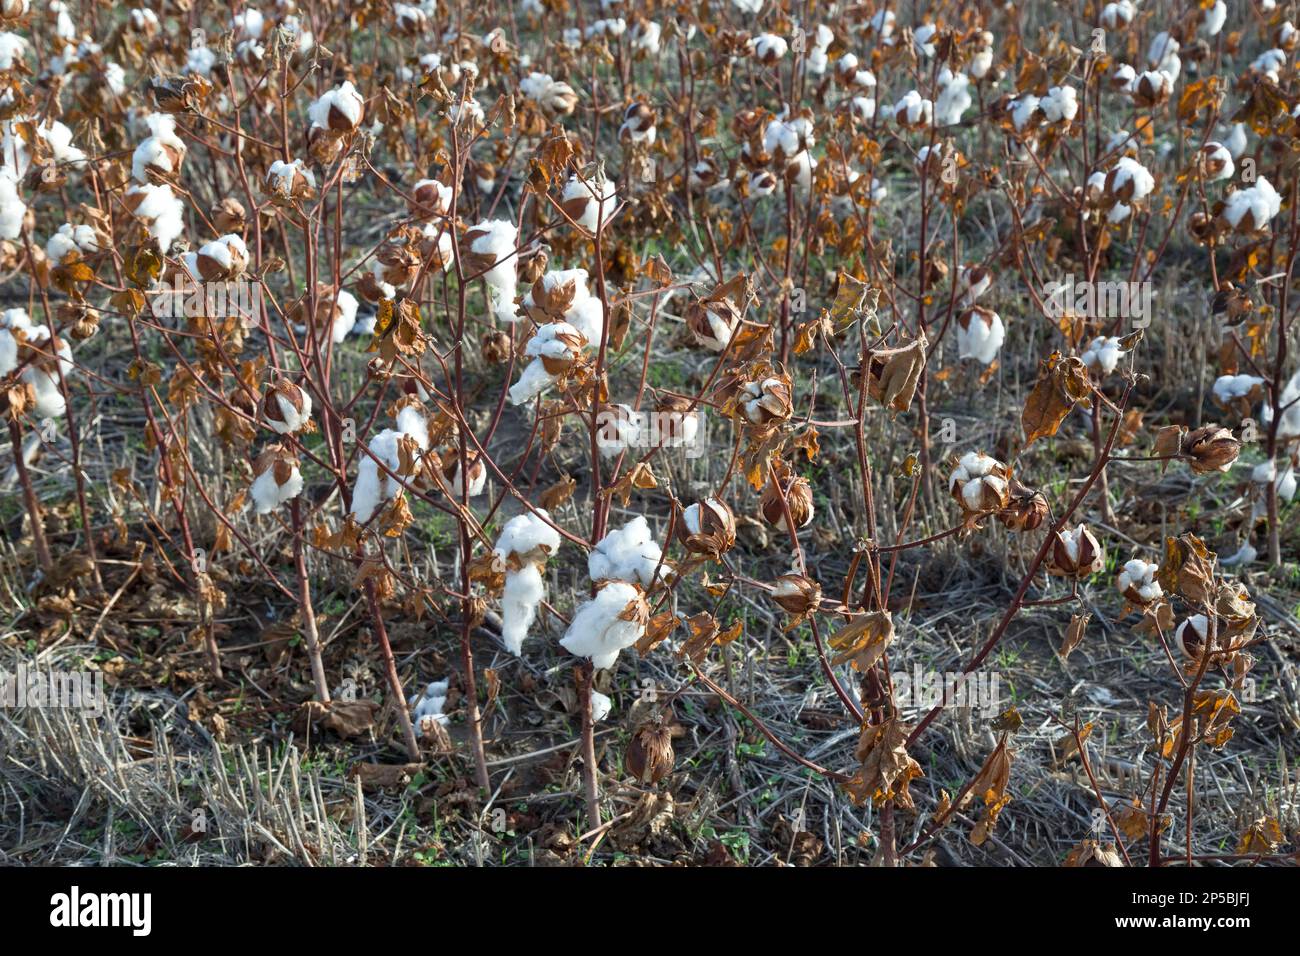 Coton en culture au champ, échec de récolte dû à l'absence de précipitations tout au long de l'année, Kansas. 'Gossypium hirsutum' Banque D'Images